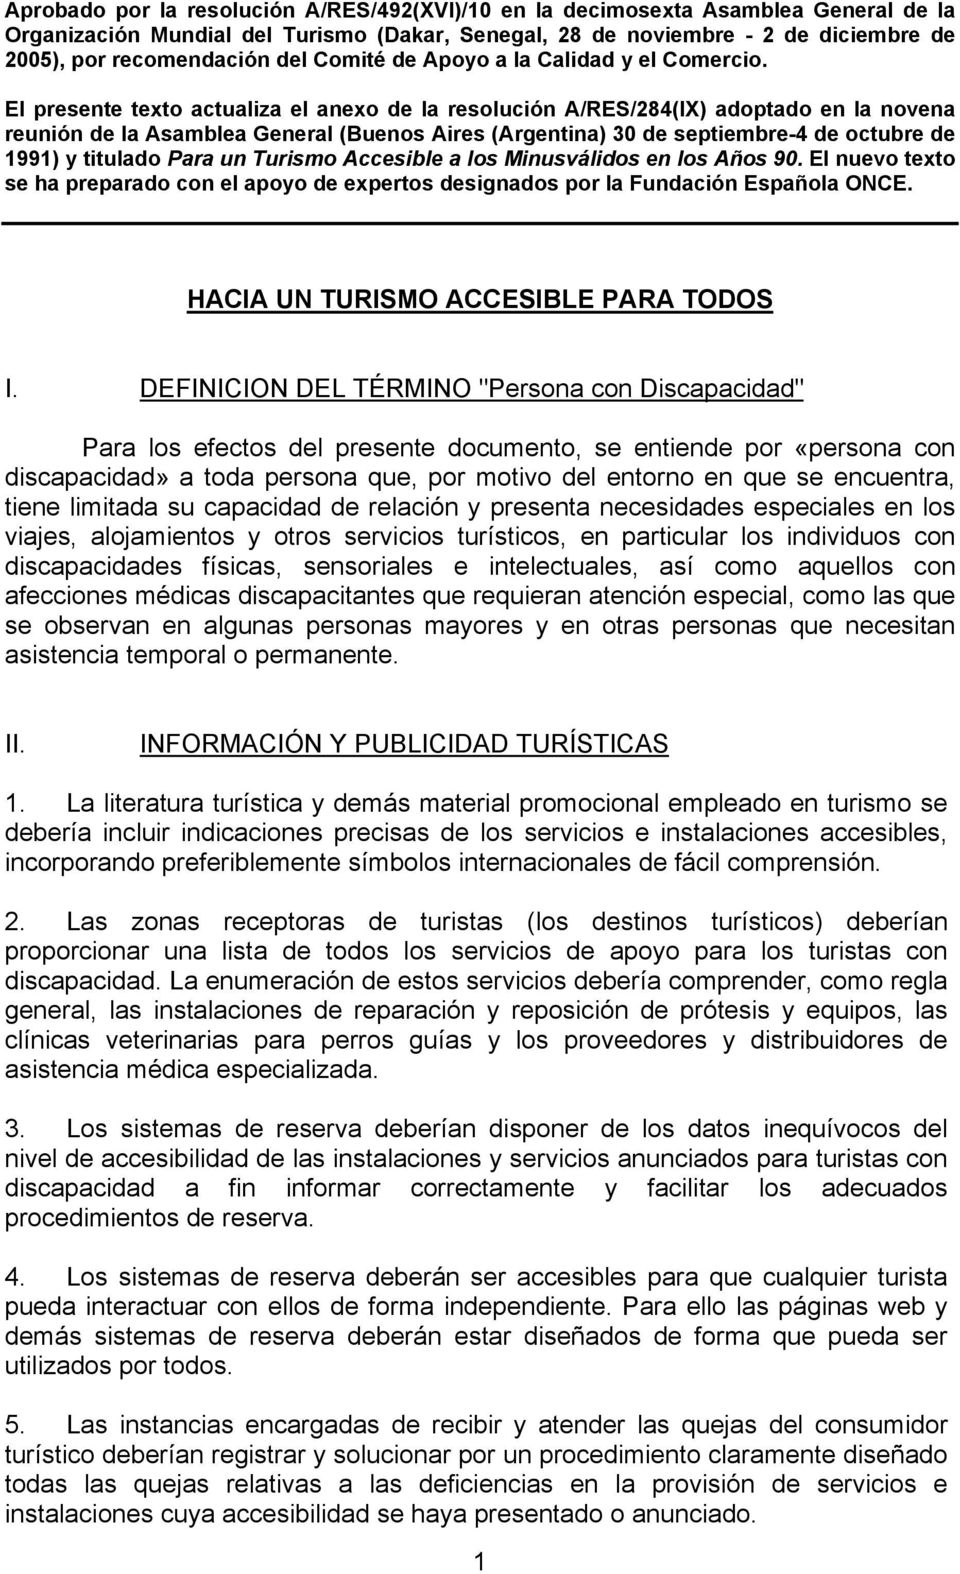 El presente texto actualiza el anexo de la resolución A/RES/284(IX) adoptado en la novena reunión de la Asamblea General (Buenos Aires (Argentina) 30 de septiembre-4 de octubre de 1991) y titulado